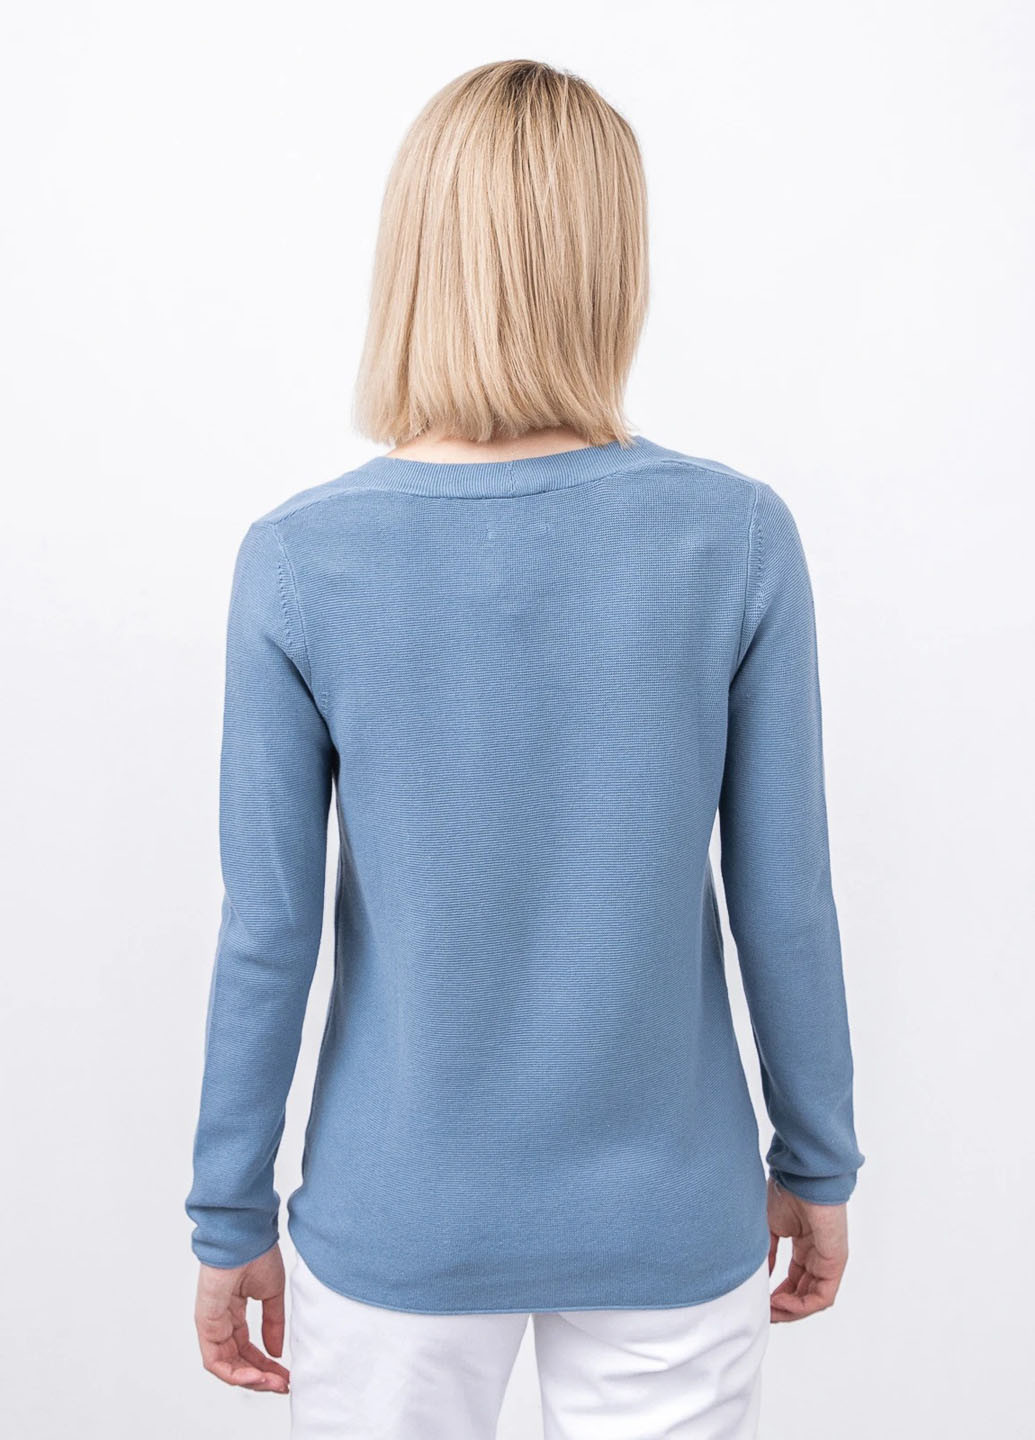 Серо-синий демисезонный пуловер пуловер Tom Tailor